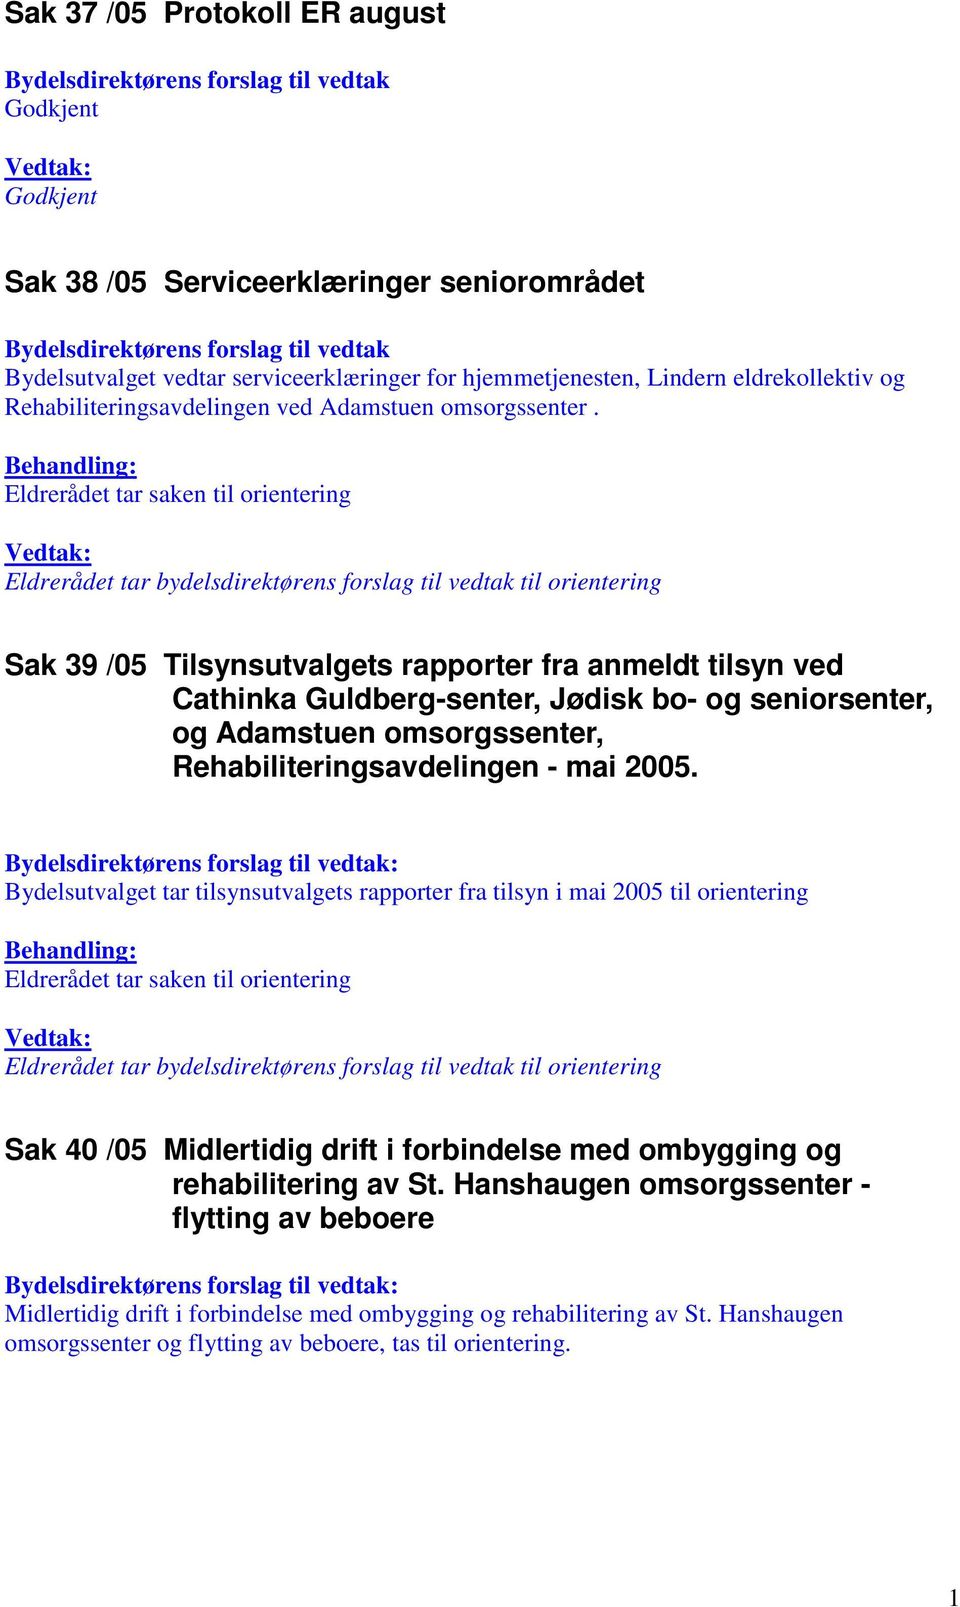 Sak 39 /05 Tilsynsutvalgets rapporter fra anmeldt tilsyn ved Cathinka Guldberg-senter, Jødisk bo- og seniorsenter, og Adamstuen omsorgssenter, Rehabiliteringsavdelingen - mai 2005.